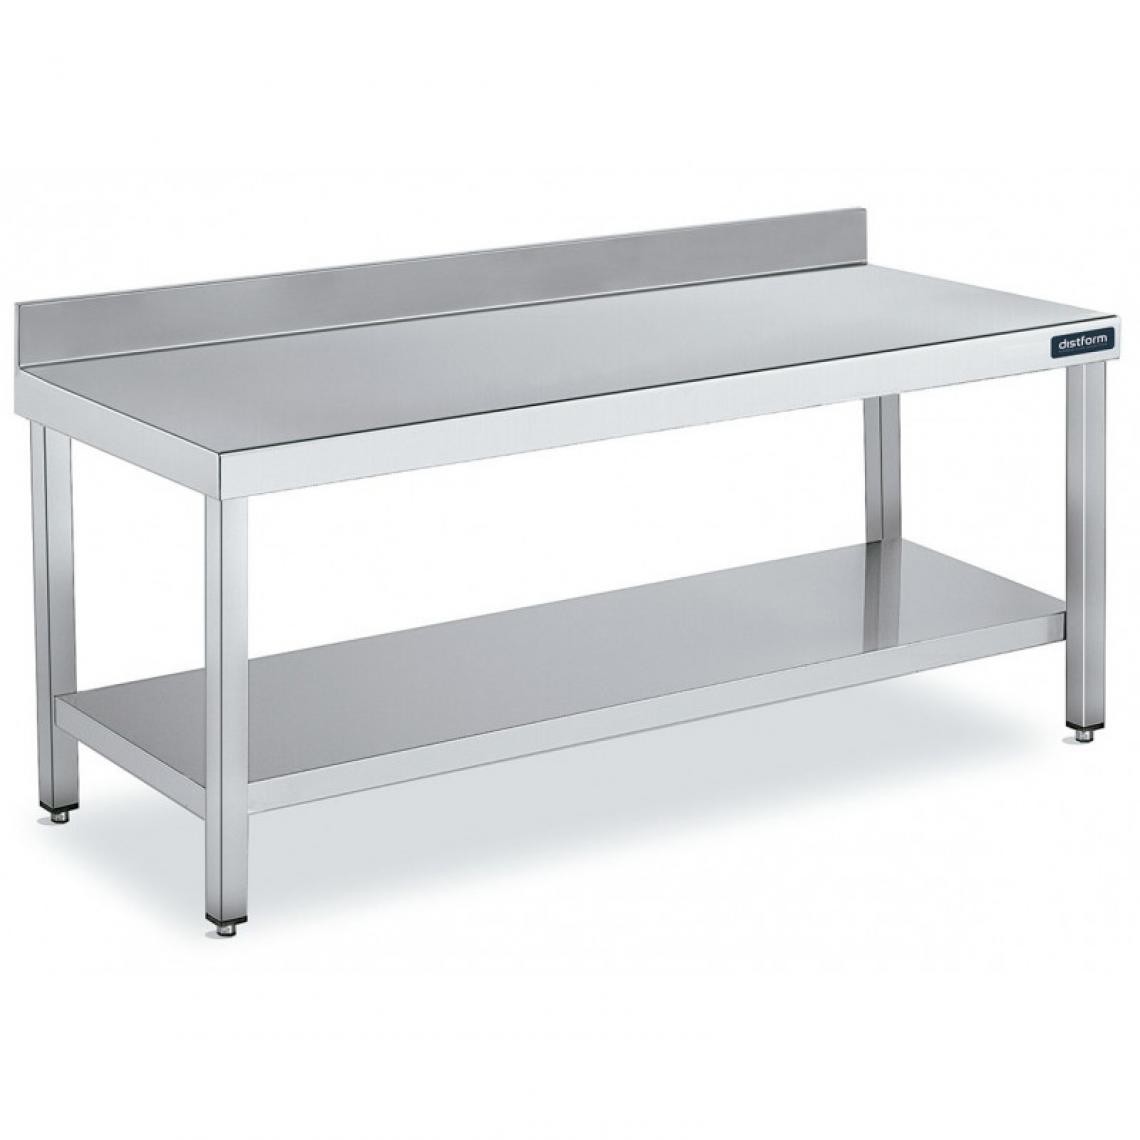 DISTFORM - Table Adossée en Inox avec 1 étagère Profondeur 700 mm - Distform - Acier inoxydable2200x700 - Tables à manger